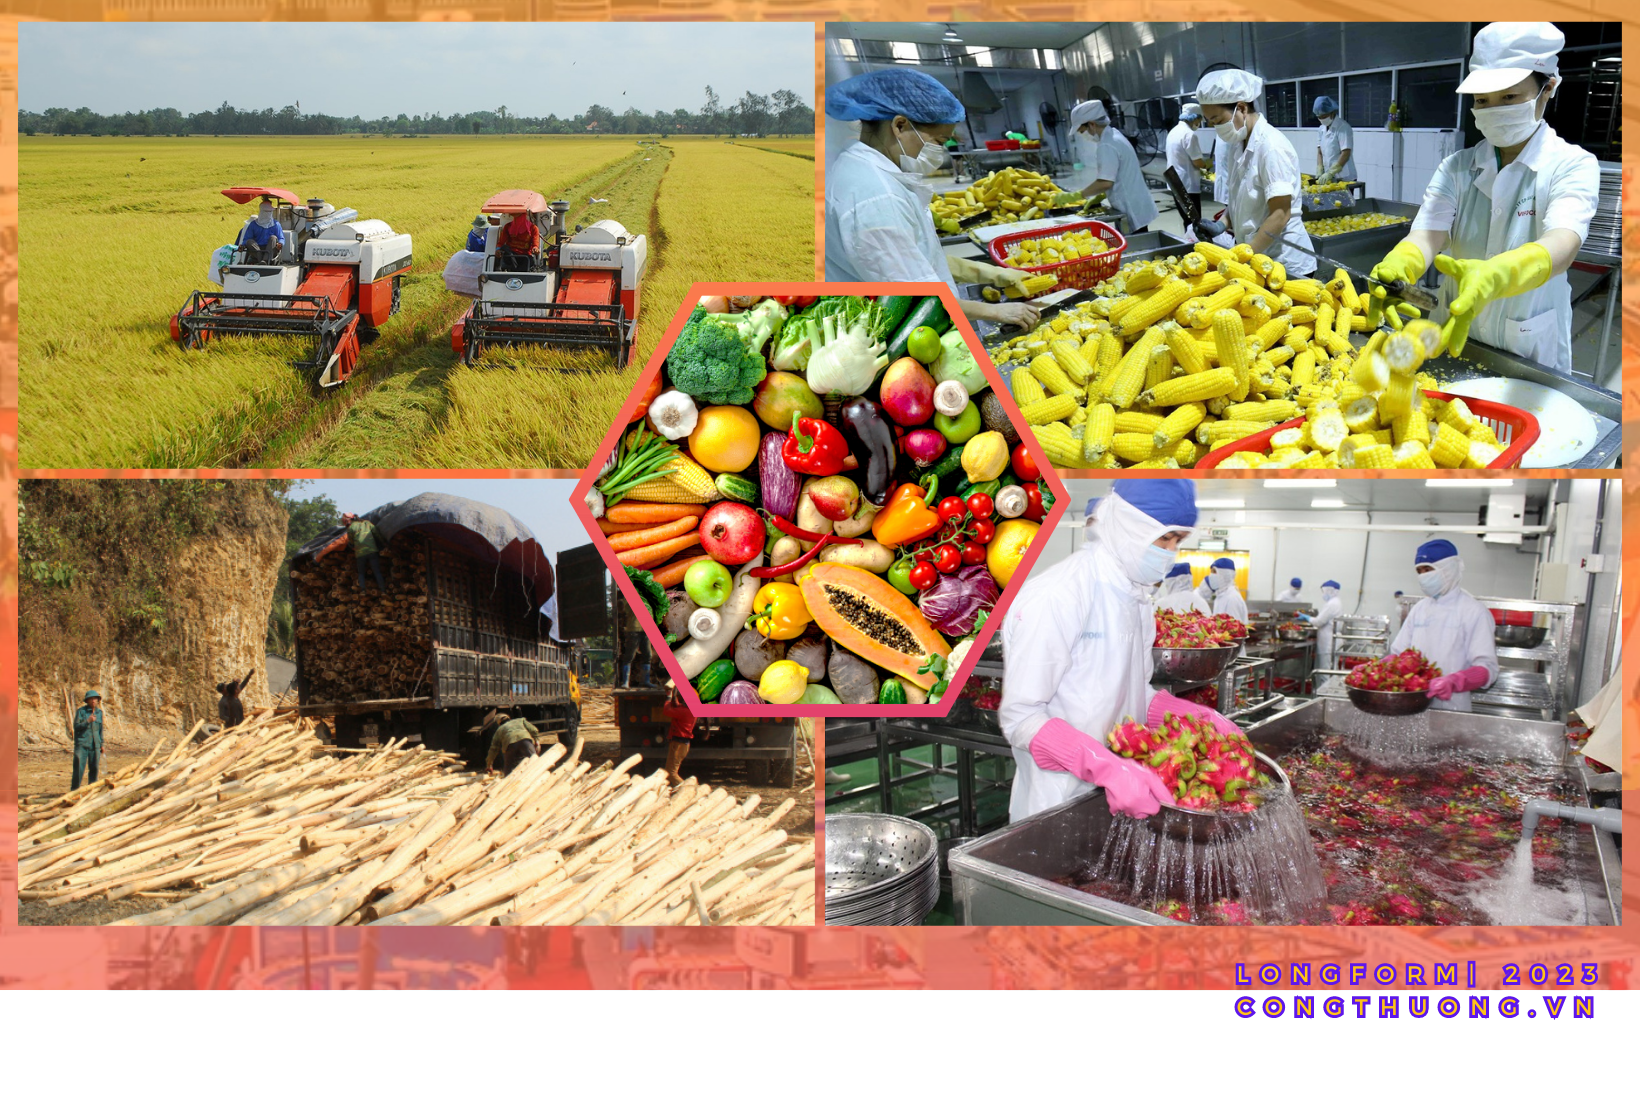 Longform | Khai thác bền vững thị trường nội địa cho tiêu thụ nông sản